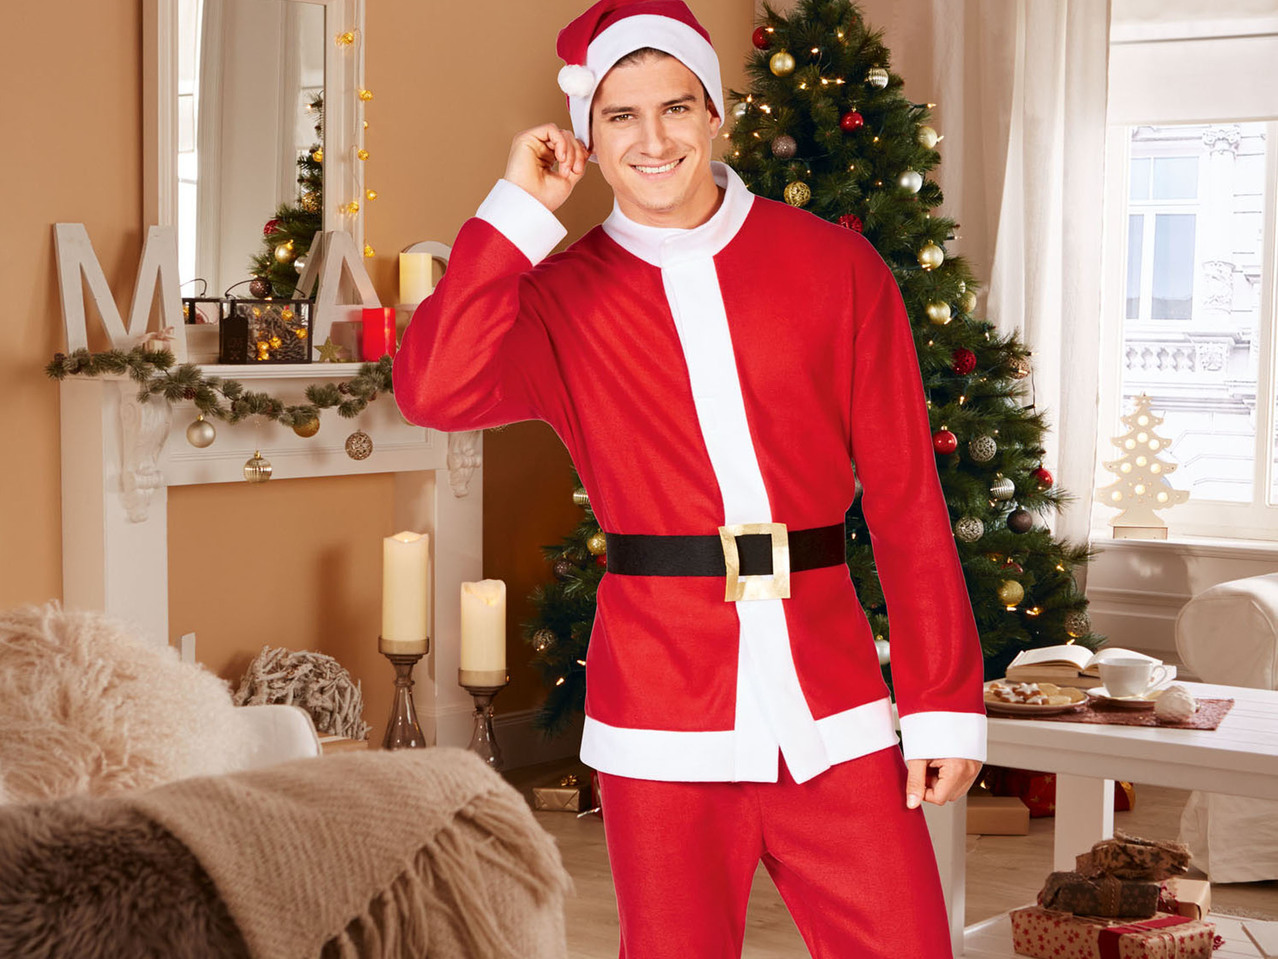 Santa Claus' Costume